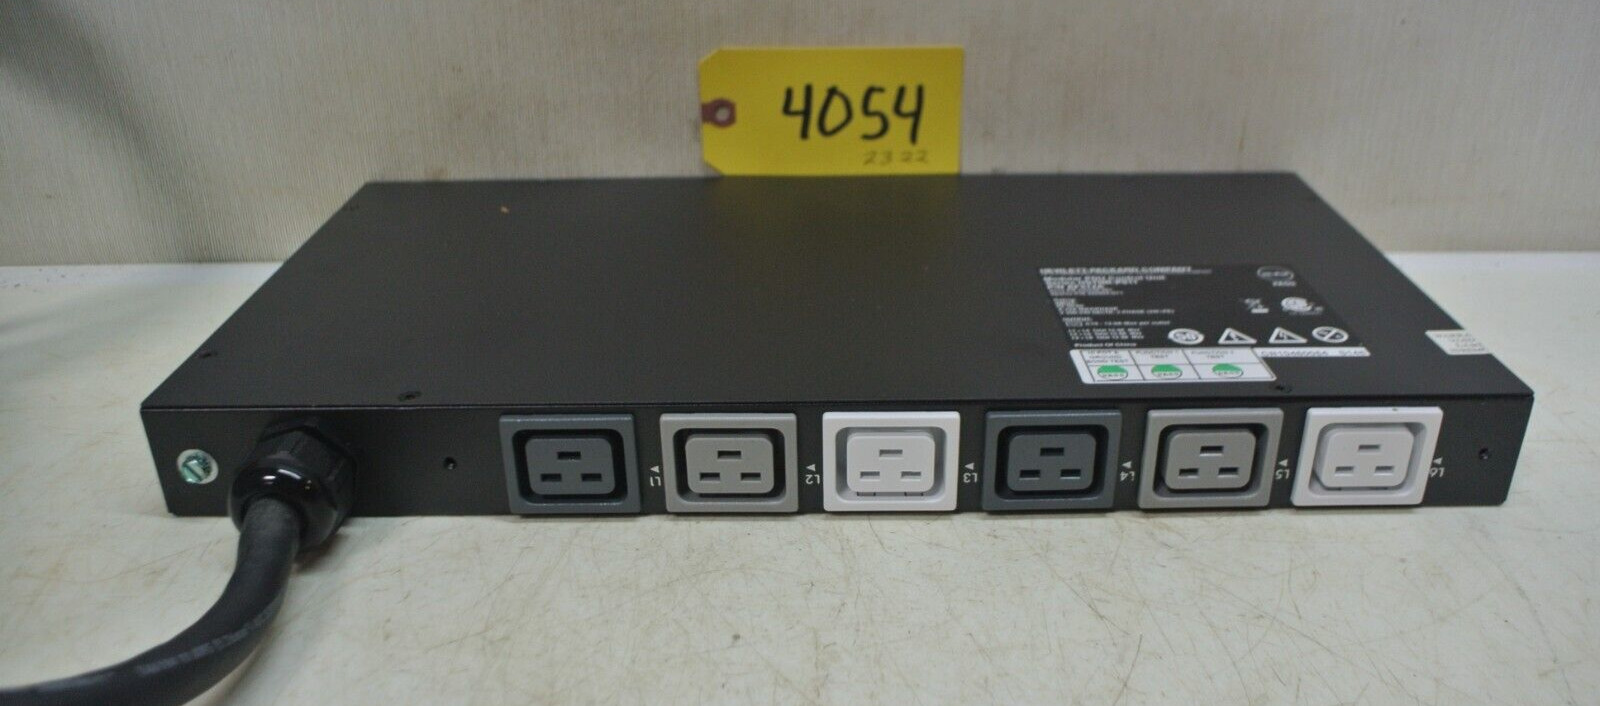 Hewlett-Packard Modular PDU Control Unit, P/N AF512A, 24 A Max, 200-240V, 3PH